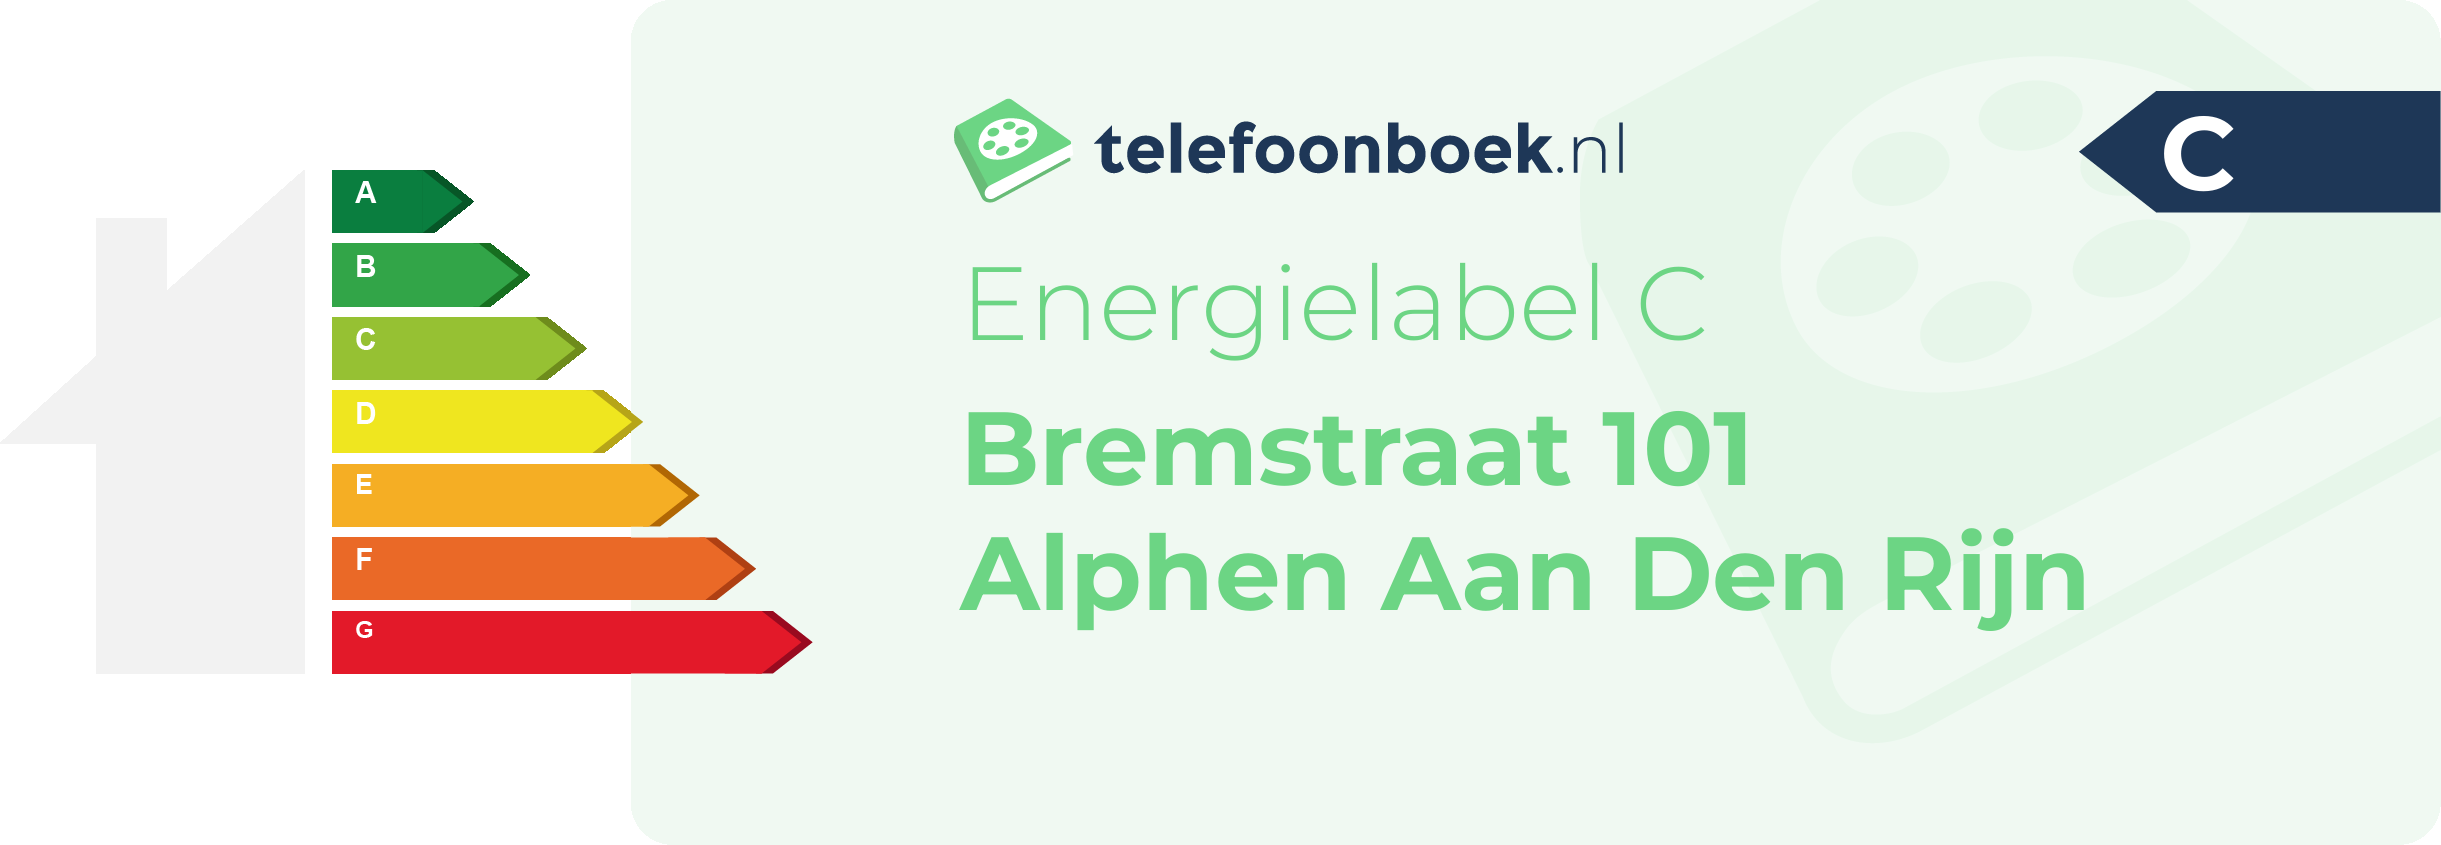 Energielabel Bremstraat 101 Alphen Aan Den Rijn